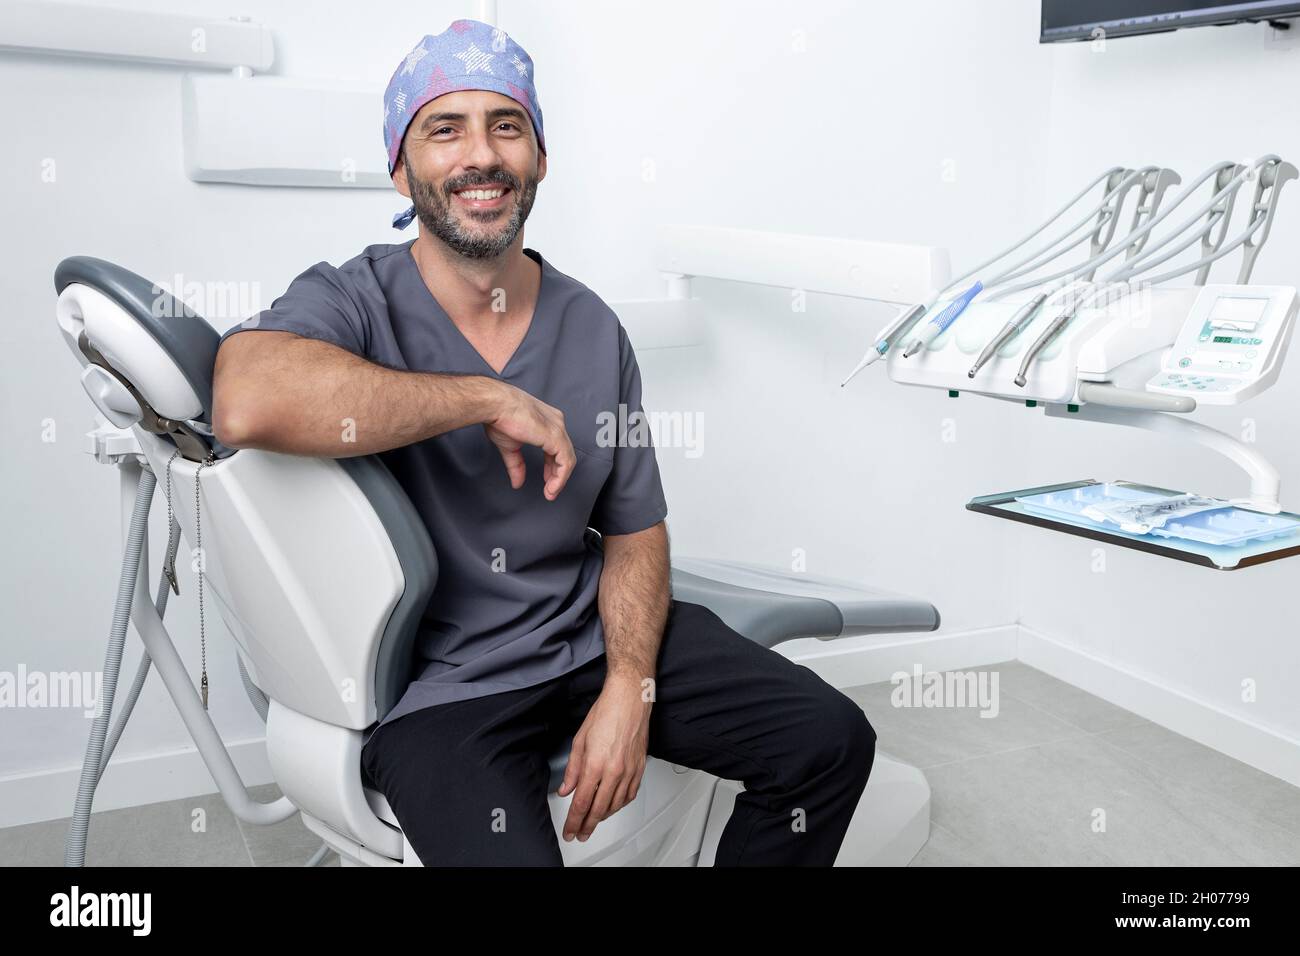 Porträt eines männlichen Zahnarztes mit Uniform, der sich auf einer Bahre in einer Zahnklinik stützt Stockfoto